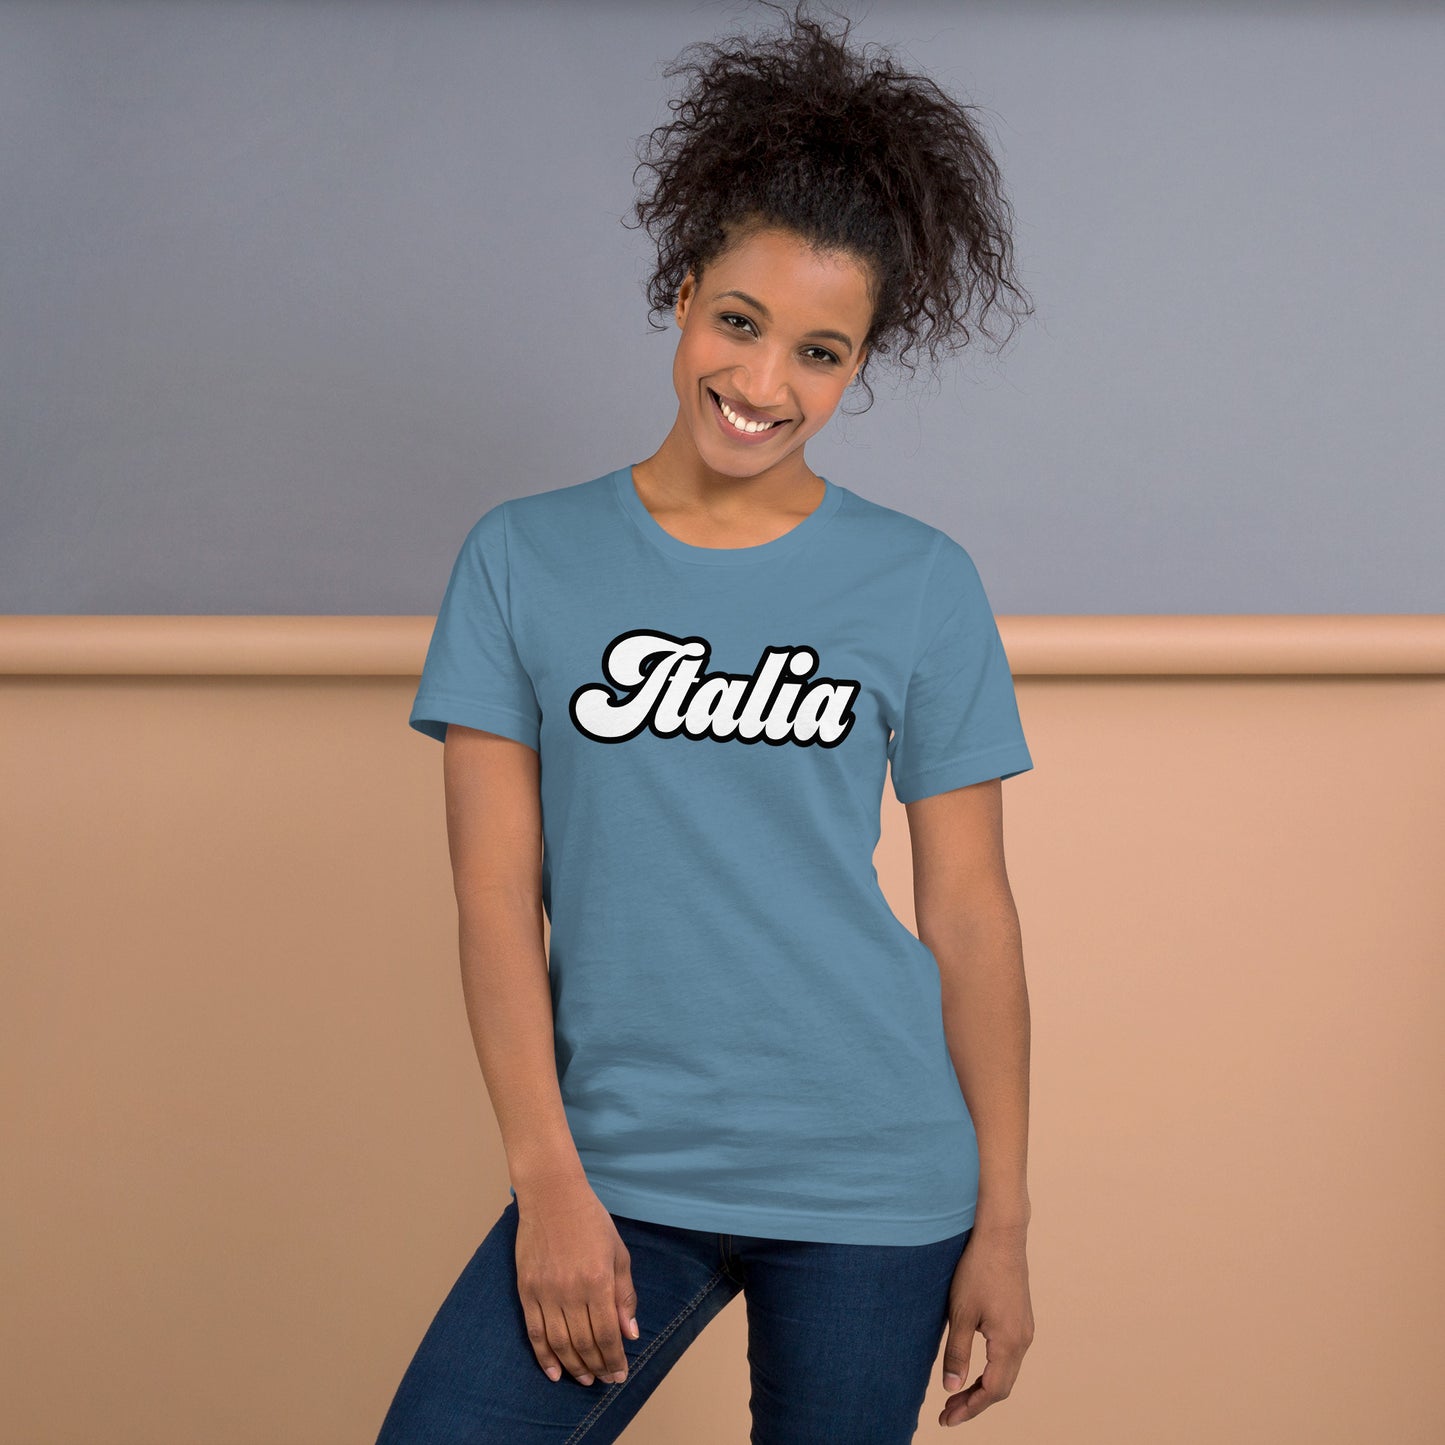 Unisex-T-Shirt "Italia"